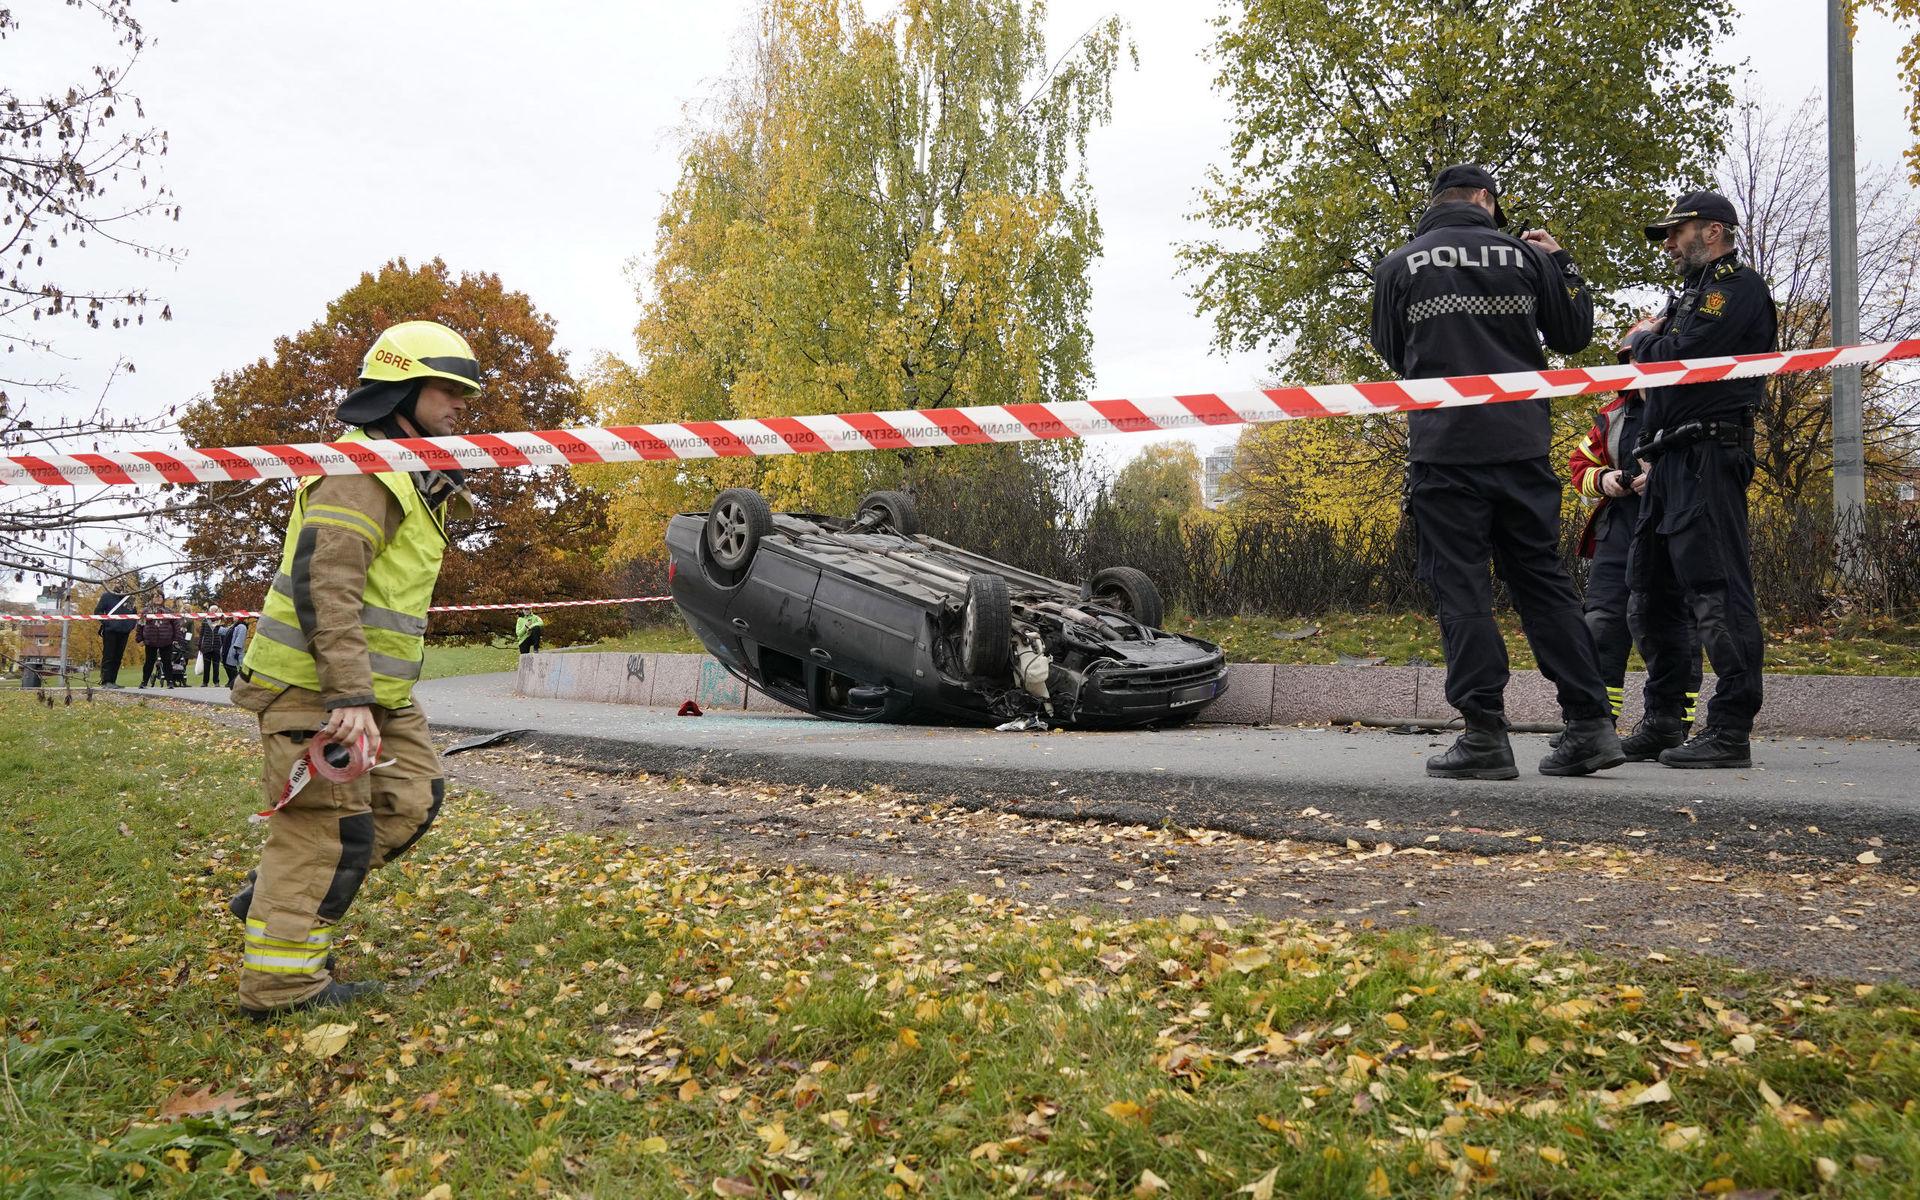 En ambulans stals när den ryckte ut till en bilolycka där den här bilen hade voltat, uppger NRK.